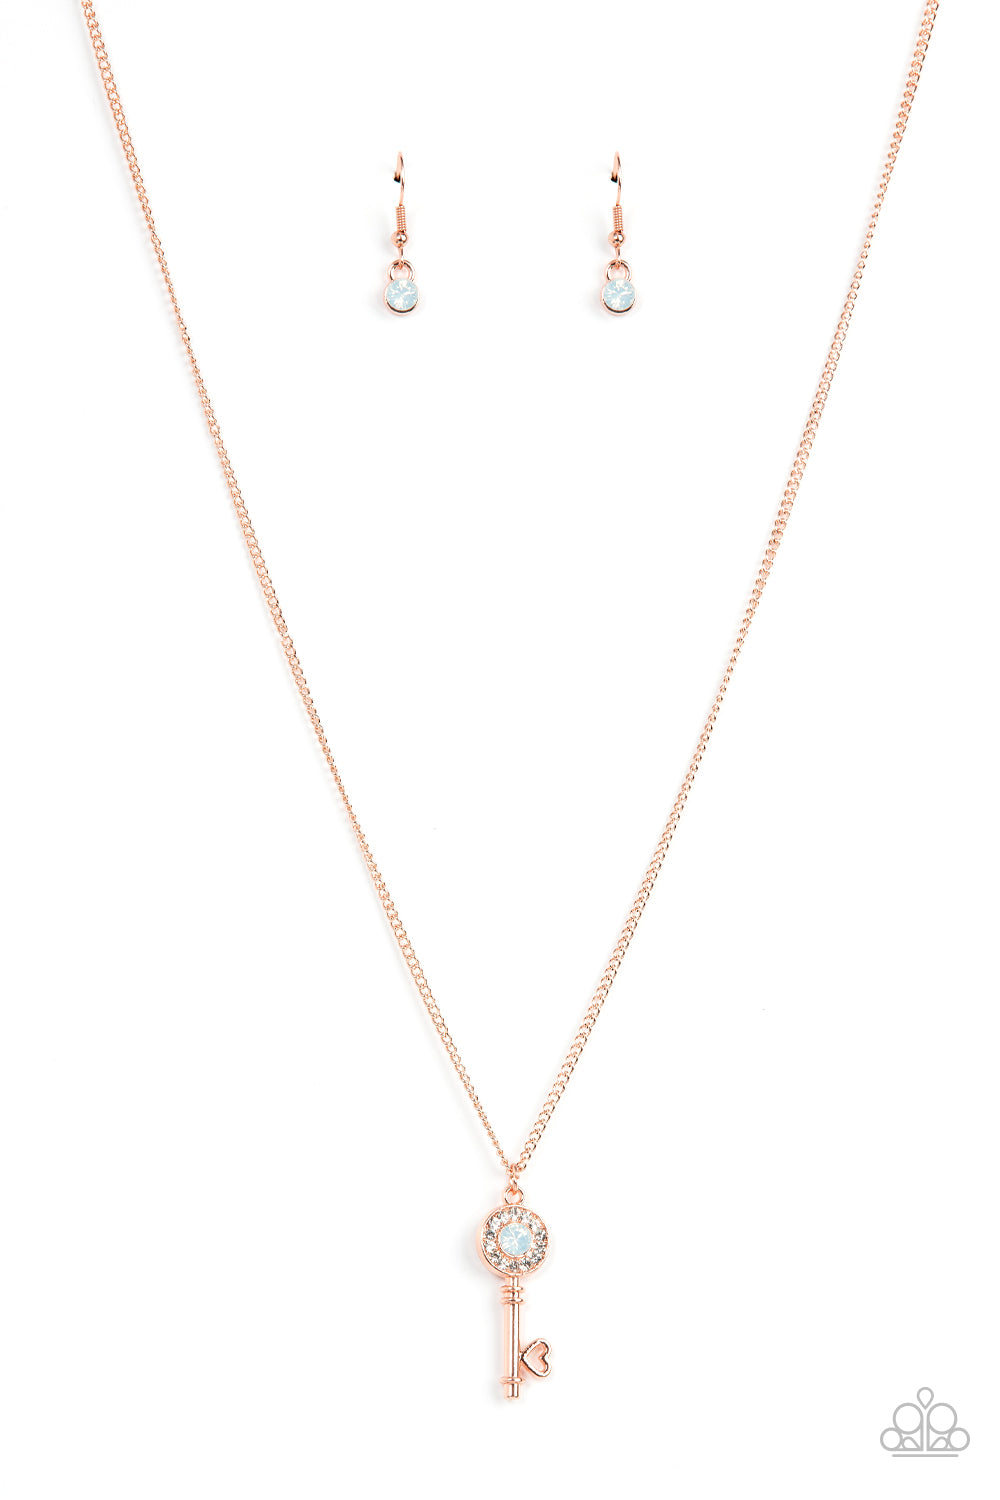 Prized Key Player - Copper Necklace freeshipping - JewLz4u Gemstone Gallery